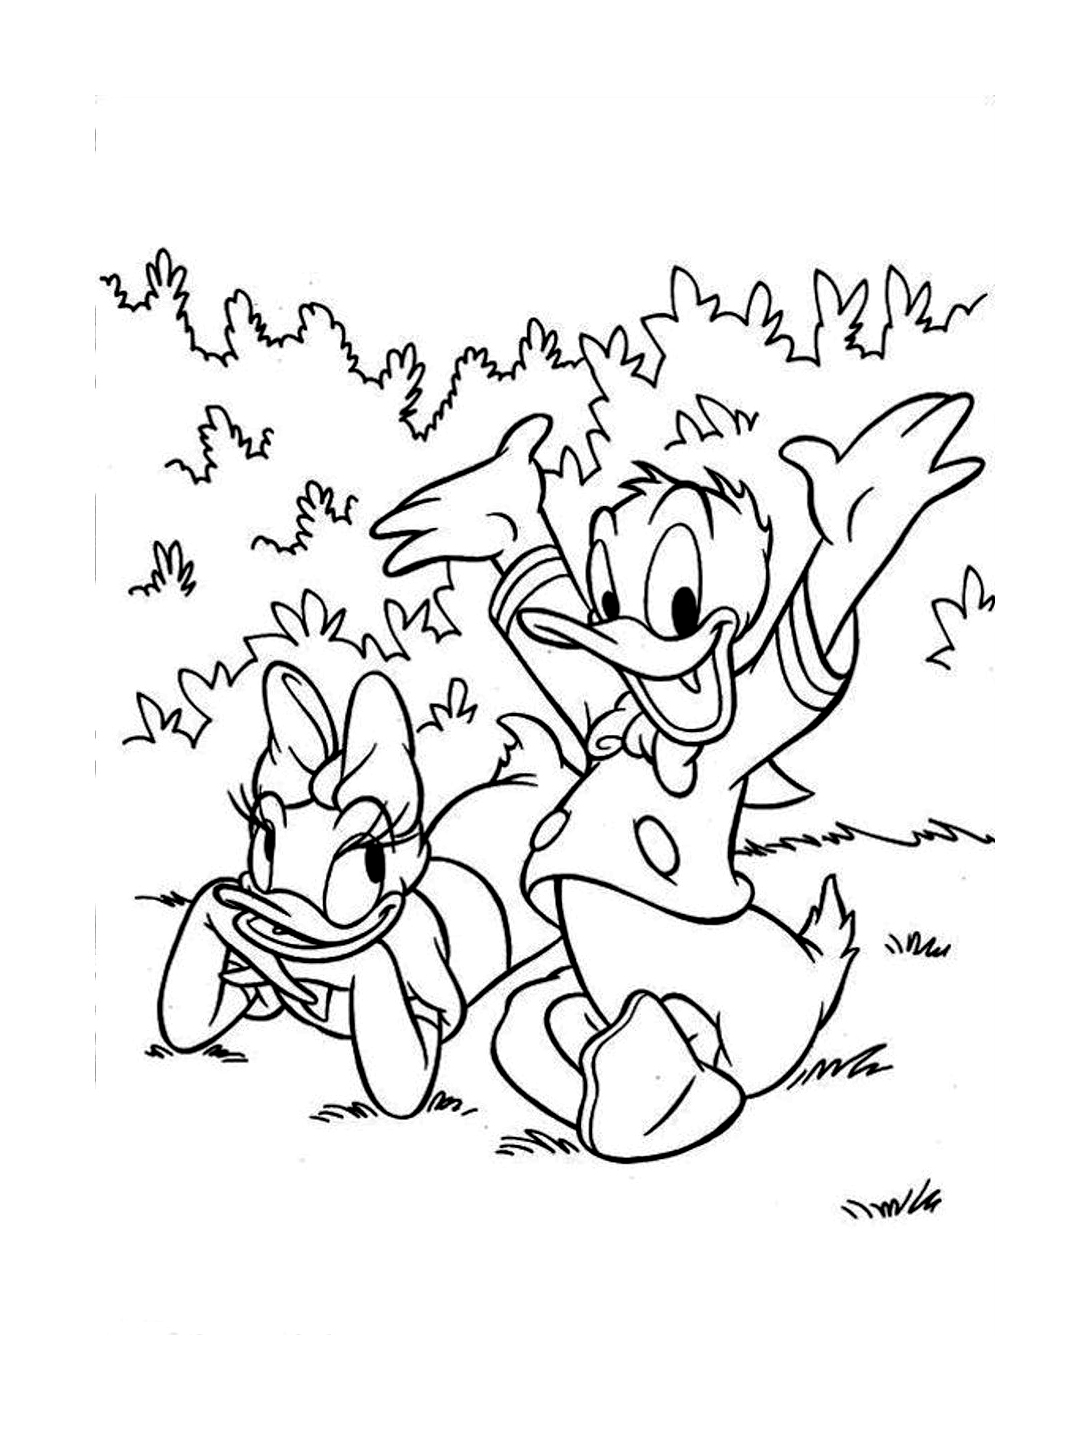 Donald e a sua amiga Daisy num piquenique